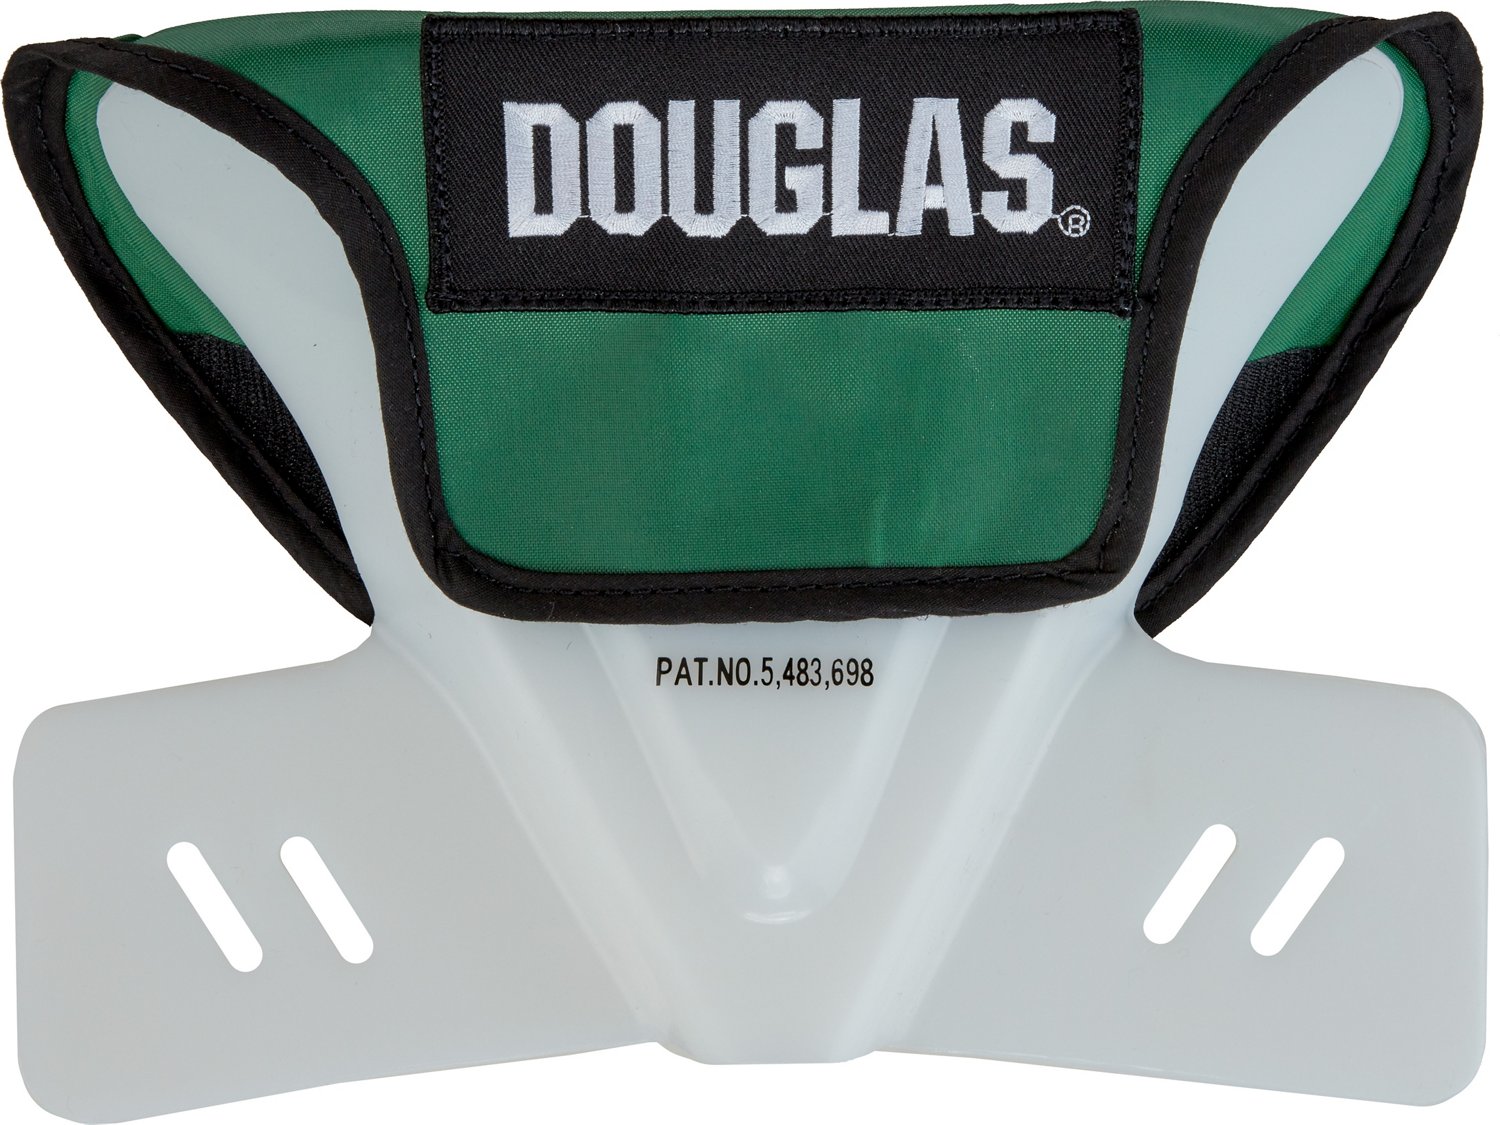 Douglas Adults Custom Pro Butterfly Restrictor